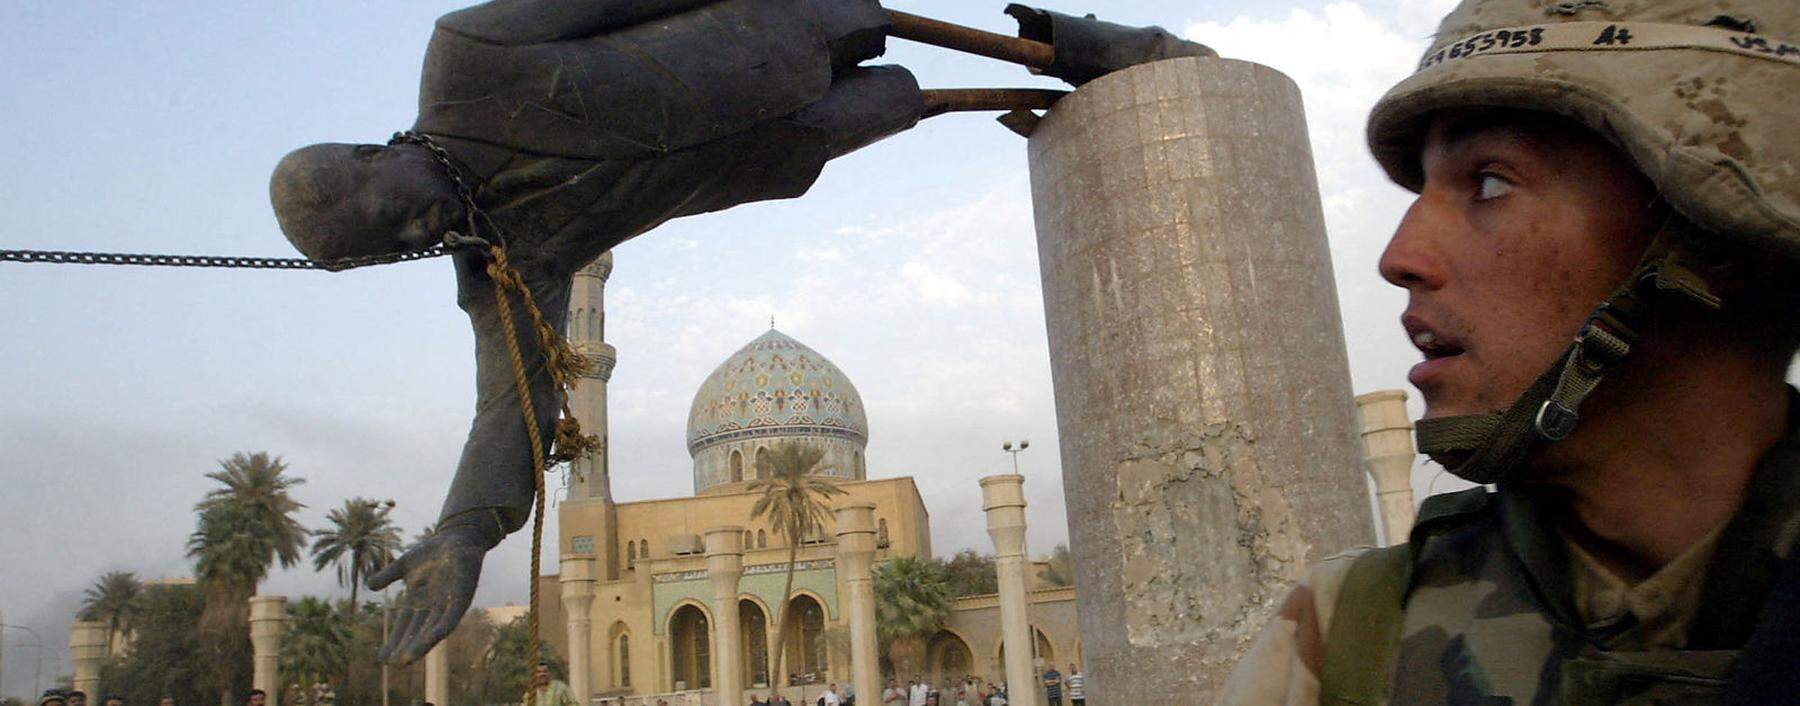 Symbol des vermeintlichen Siegs. Am 9. April 2003 rissen US-Soldaten zusammen mit Irakern in Bagdad eine Statue Saddam Husseins vom Sockel.